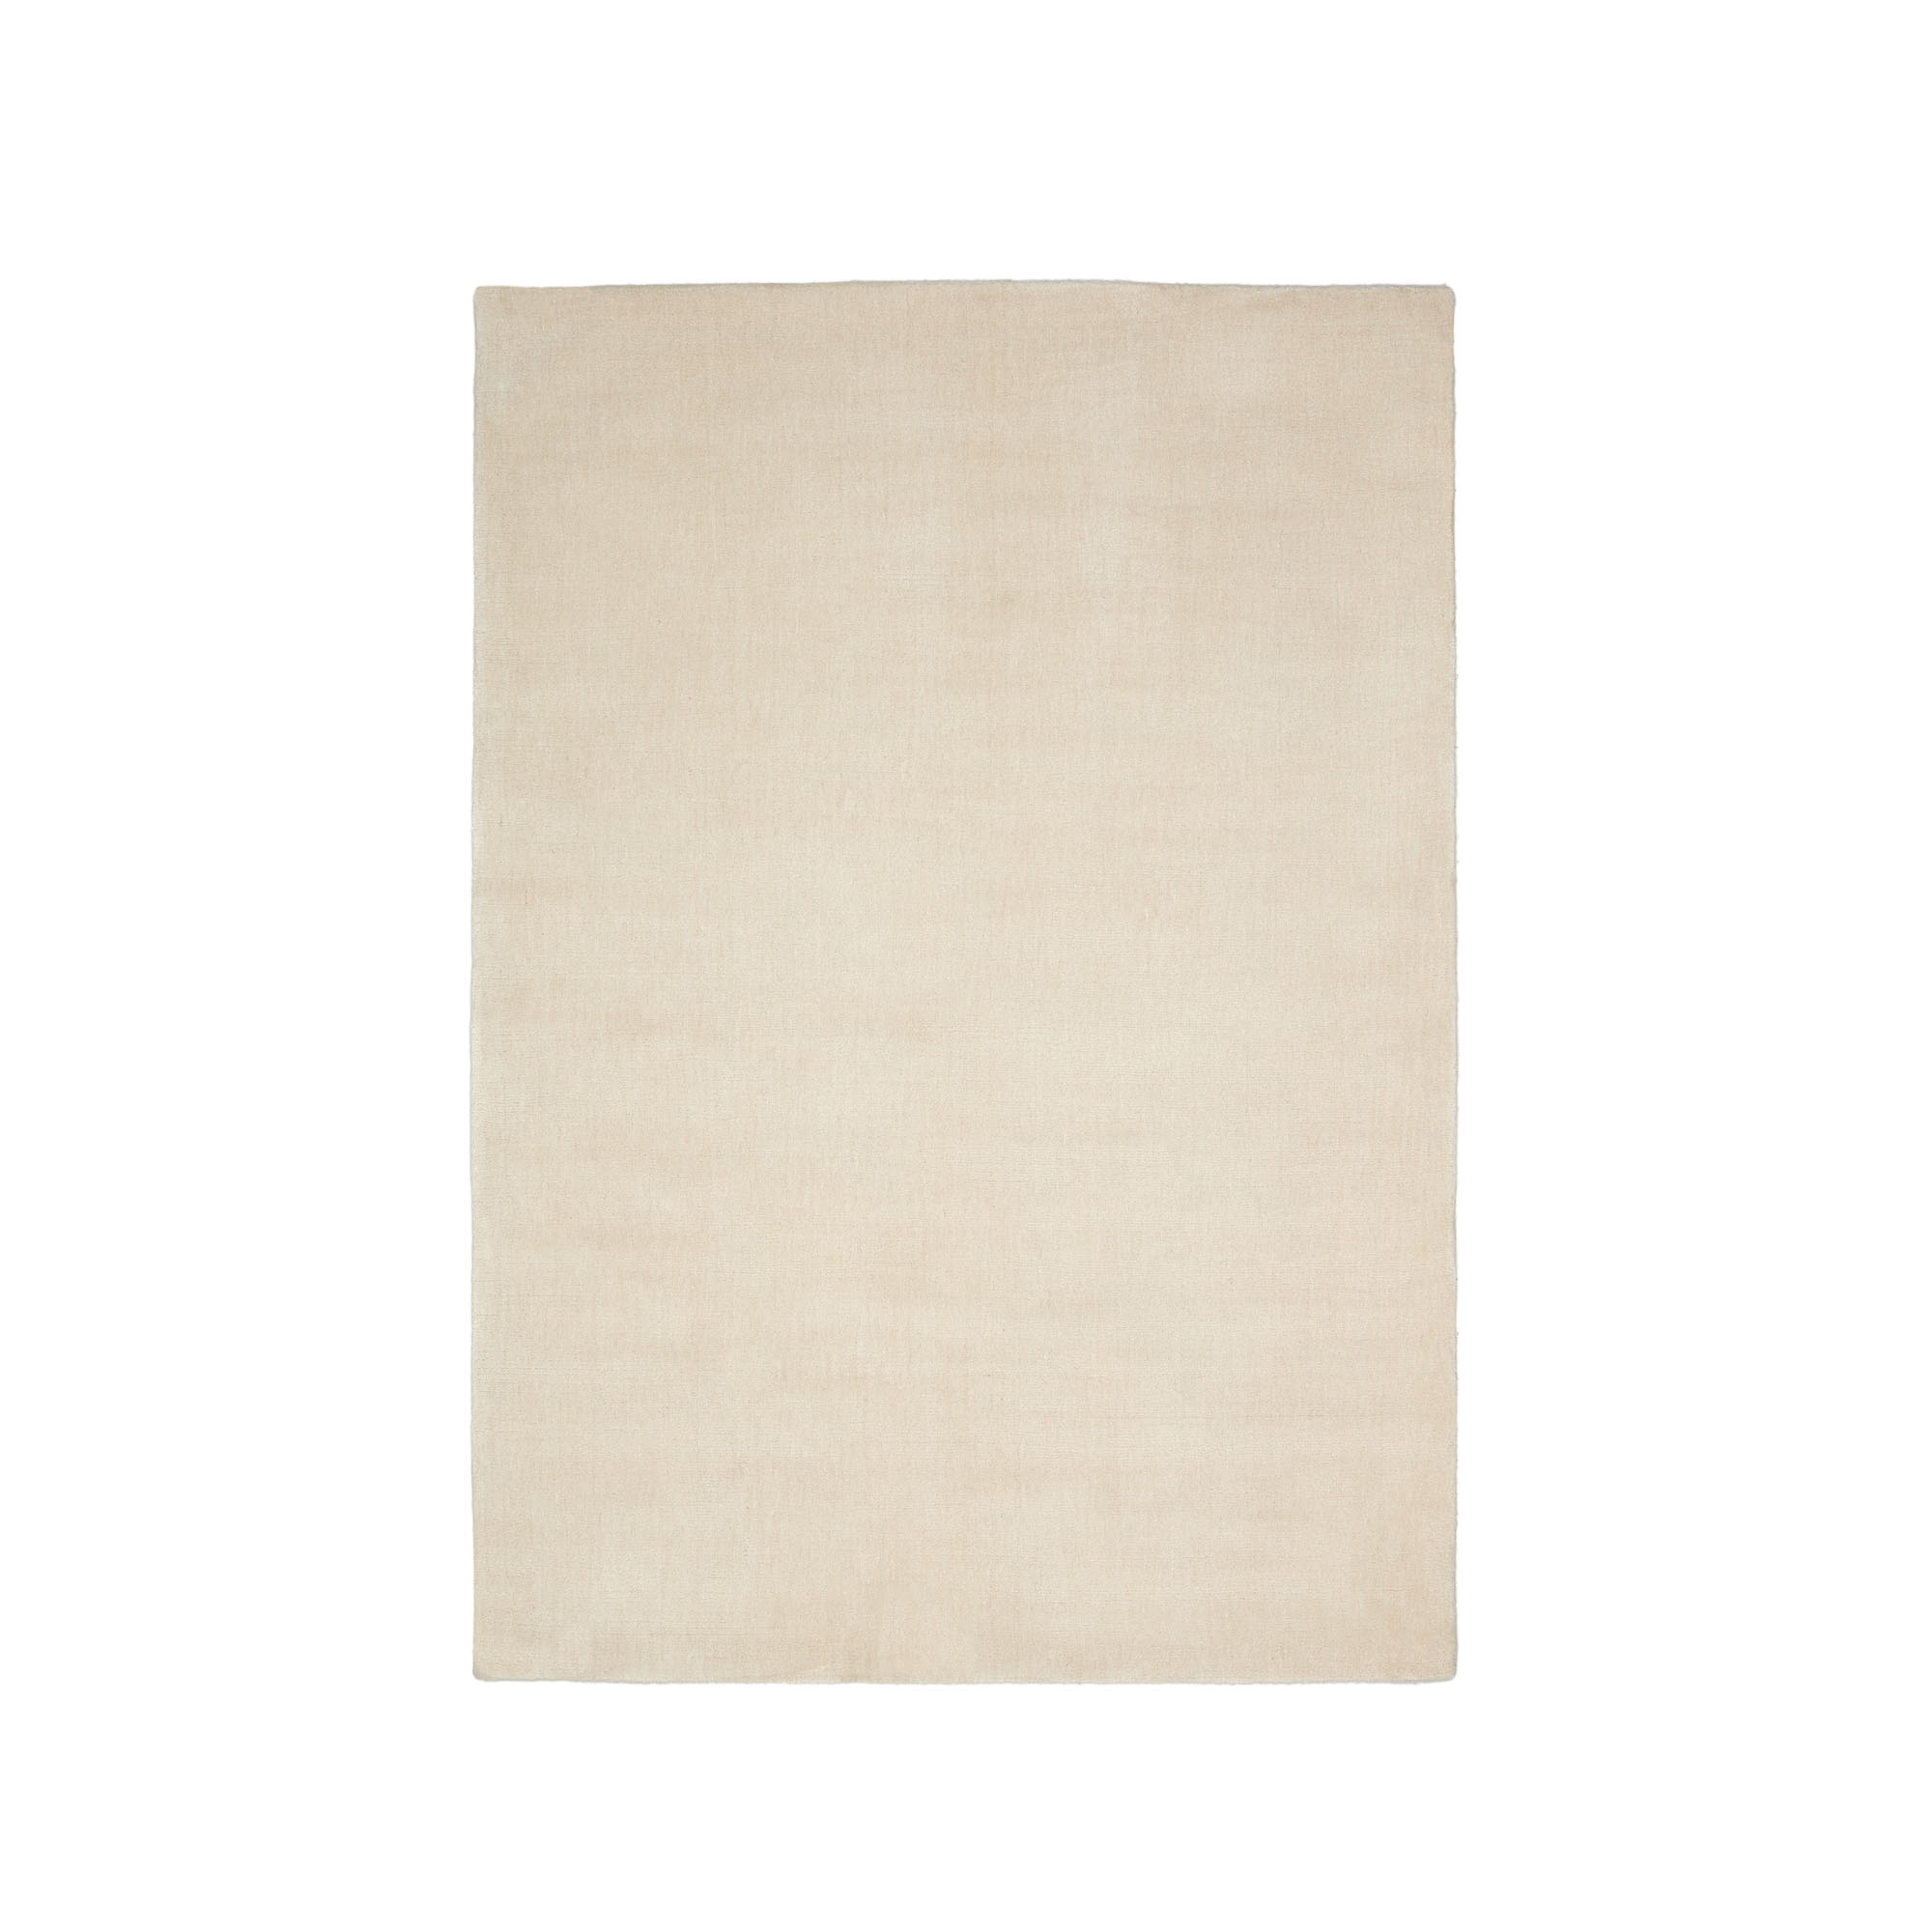 Empuries Ковер белого цвета 160 x 230 см